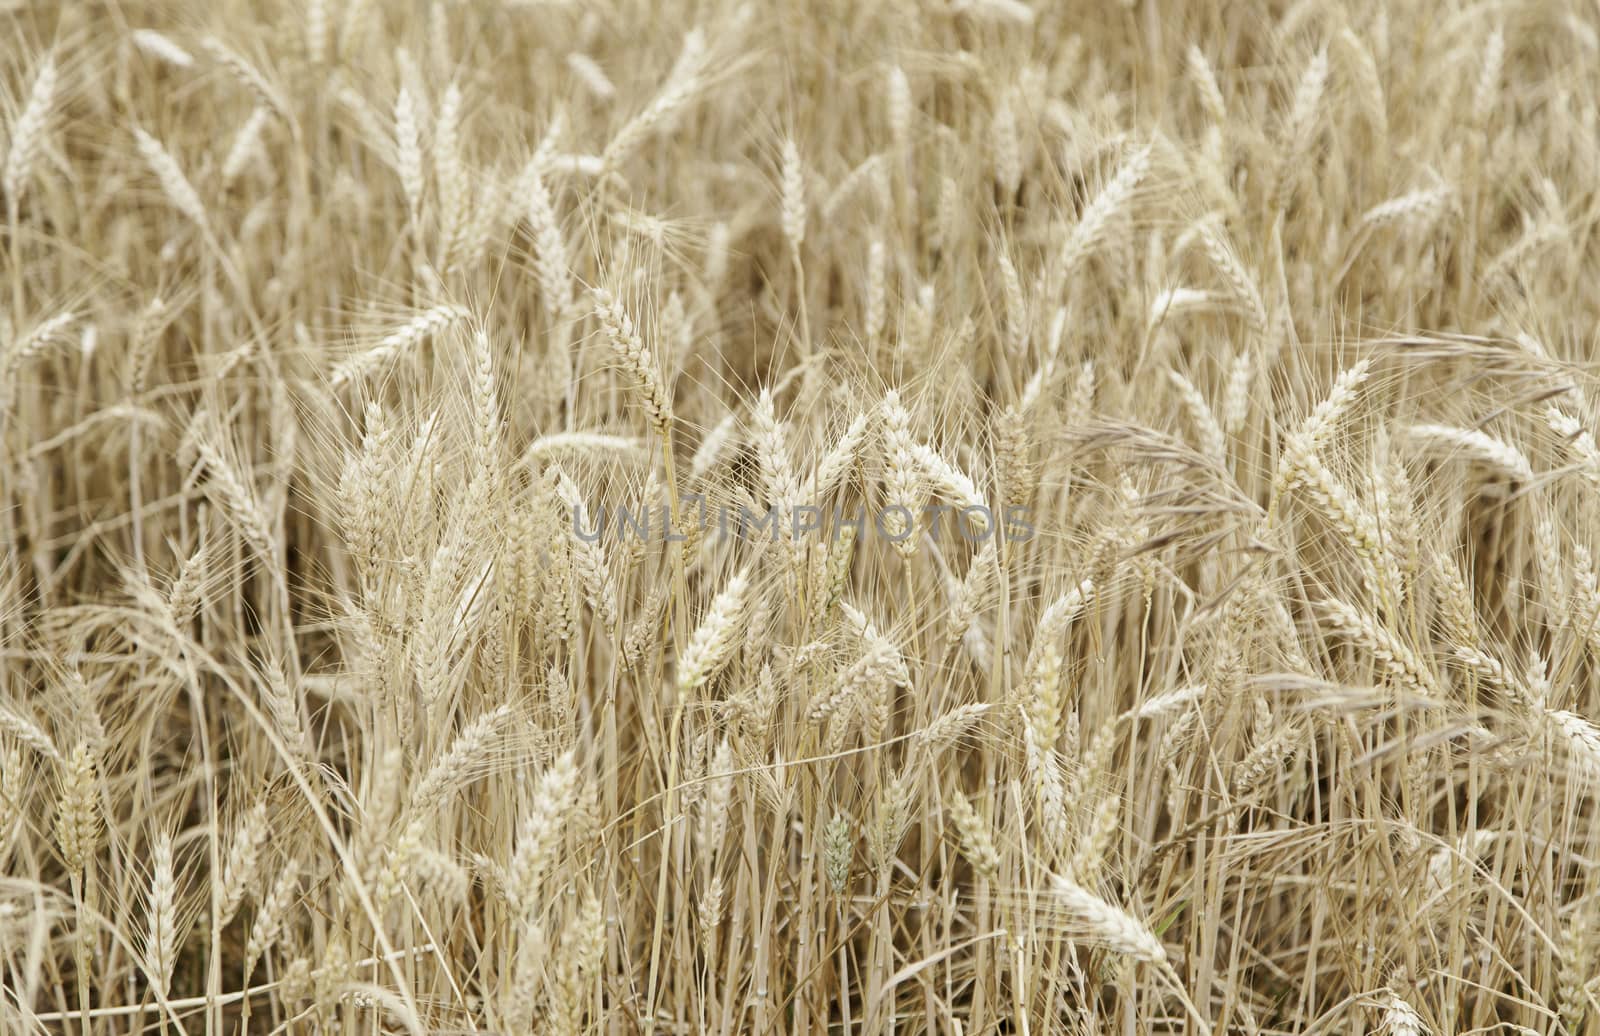 Wheat field by esebene